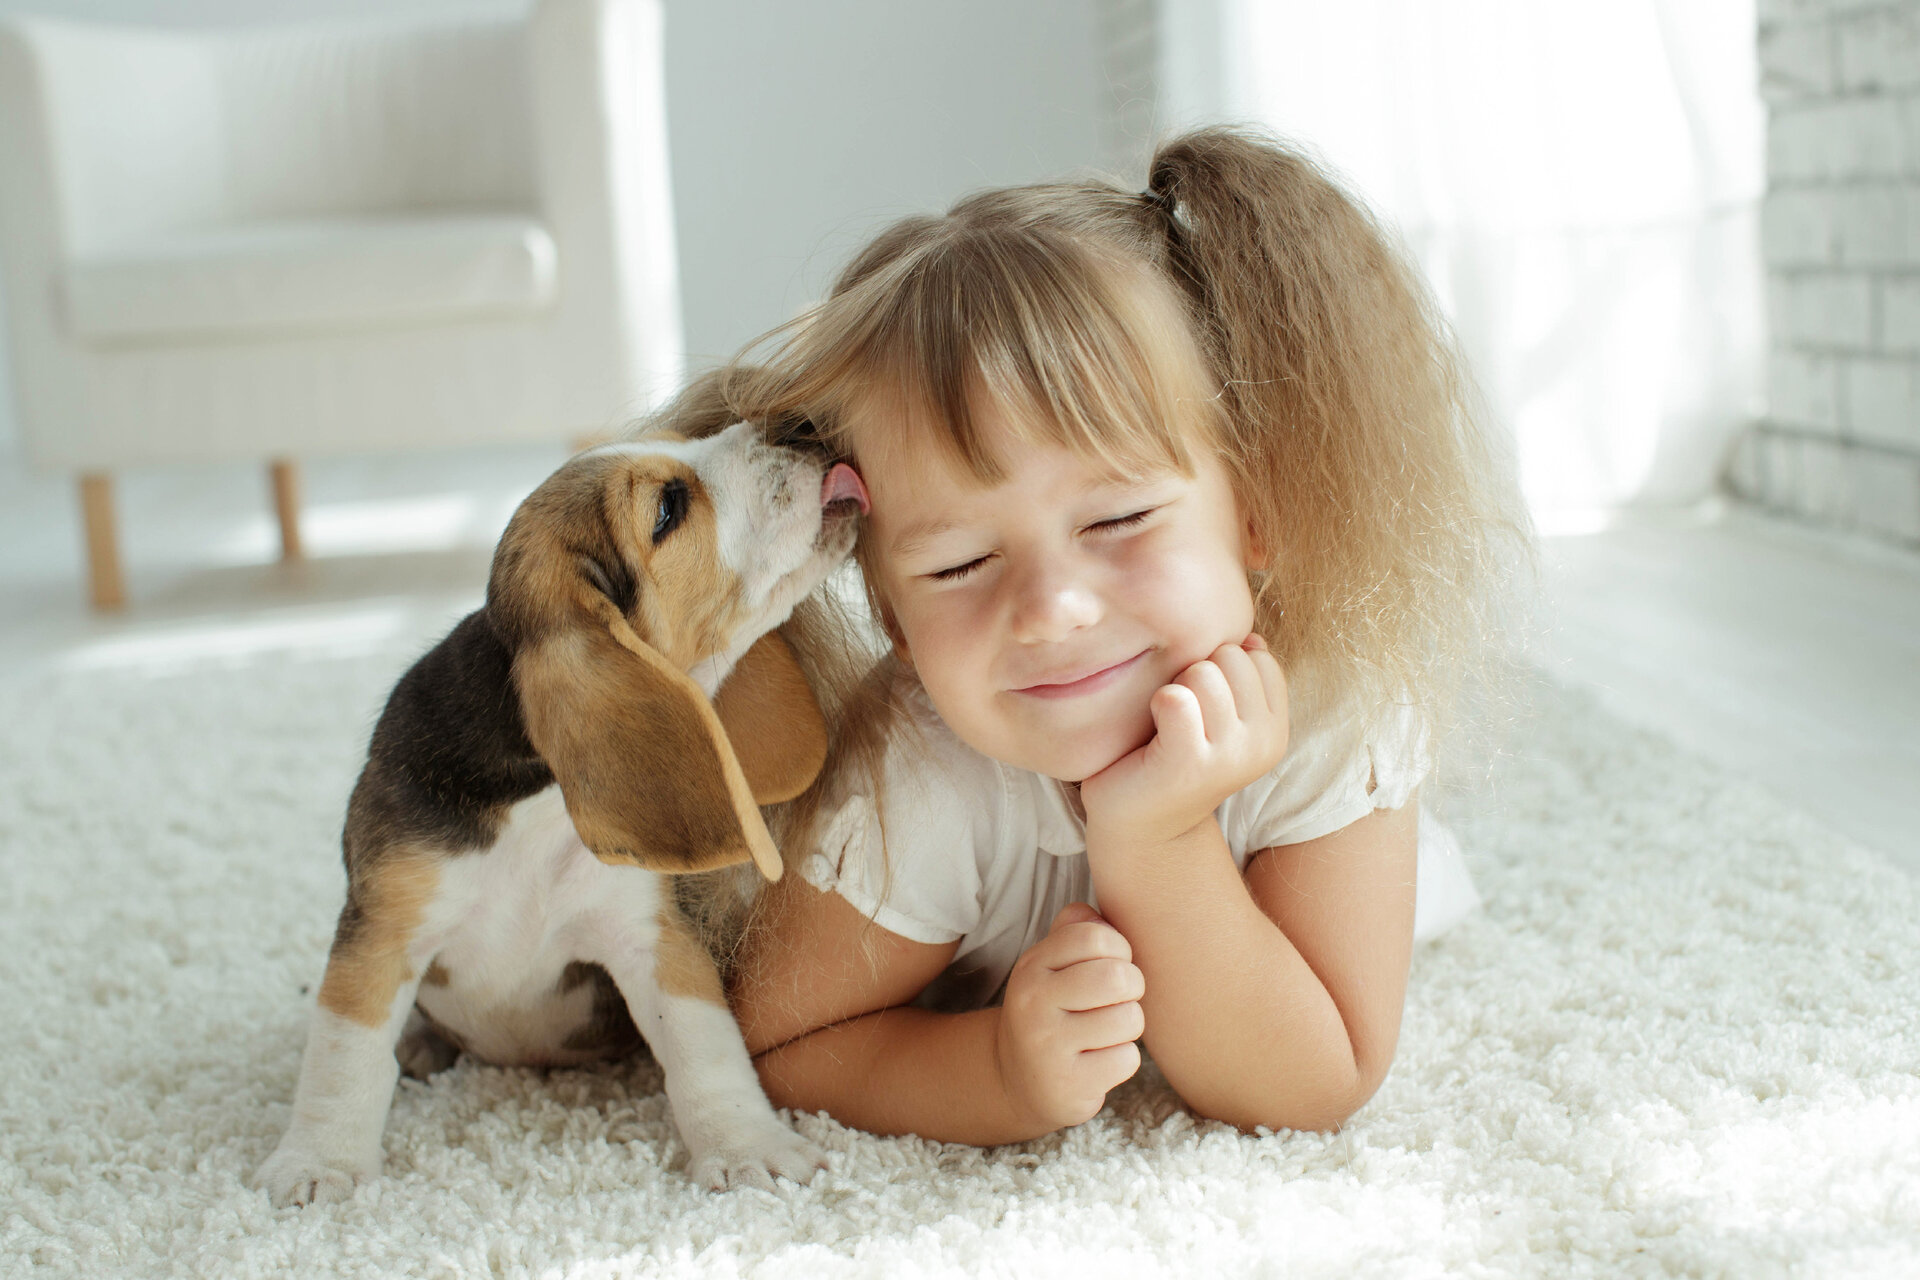 Kleines Kind mit Hundewelpen, der ihm über das Gesicht leckt